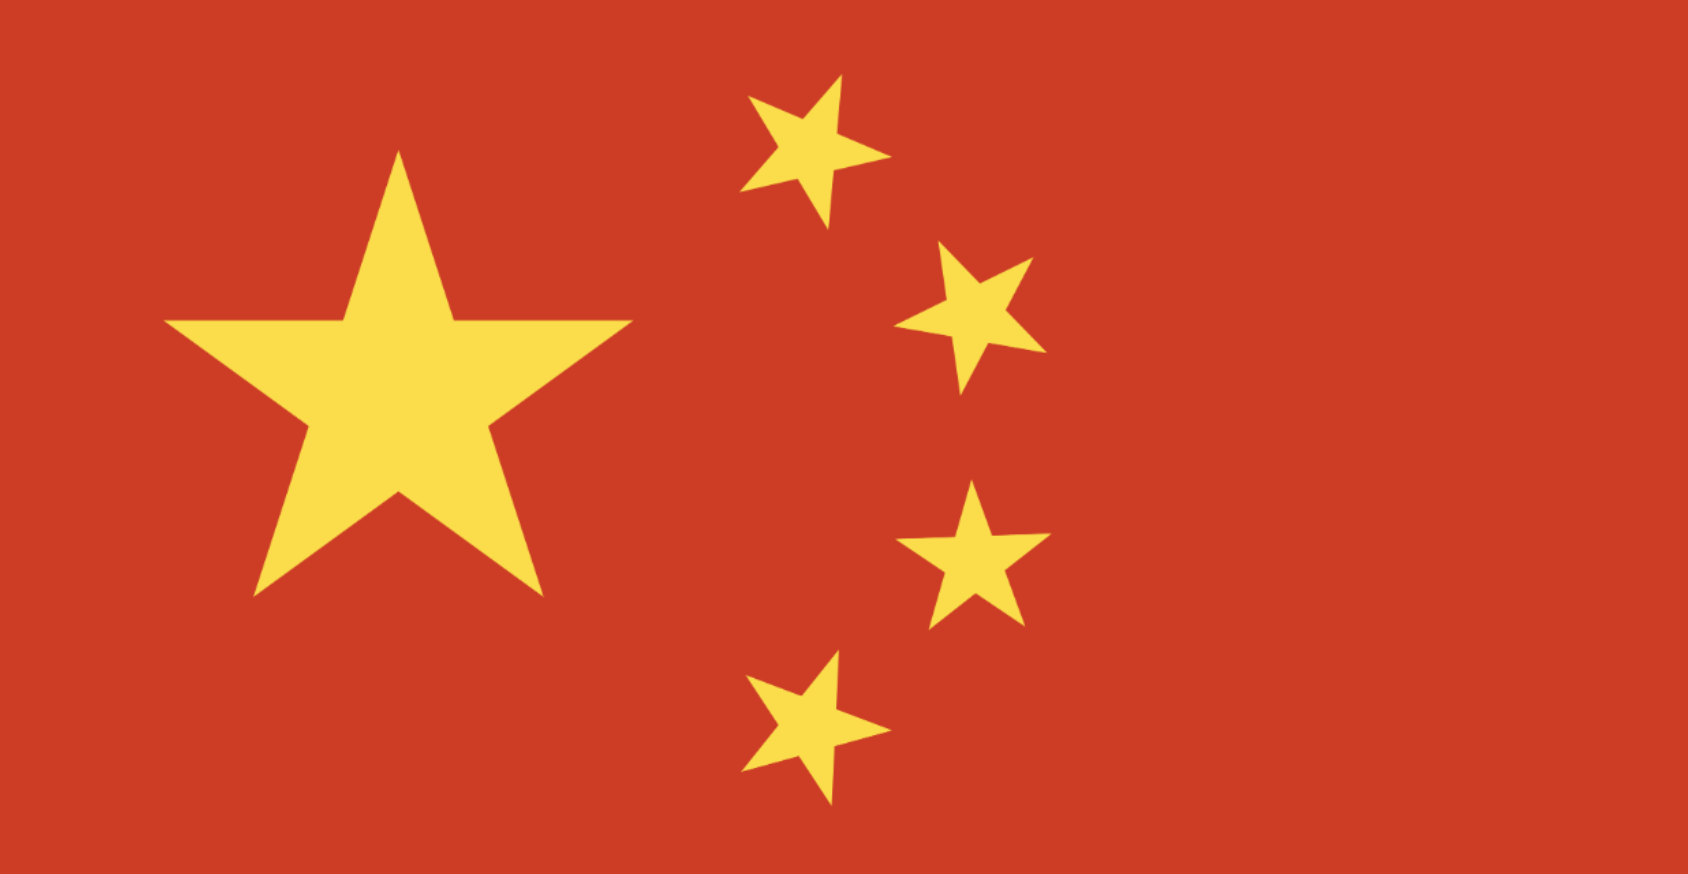 中华人民共和国消费者权益保护法